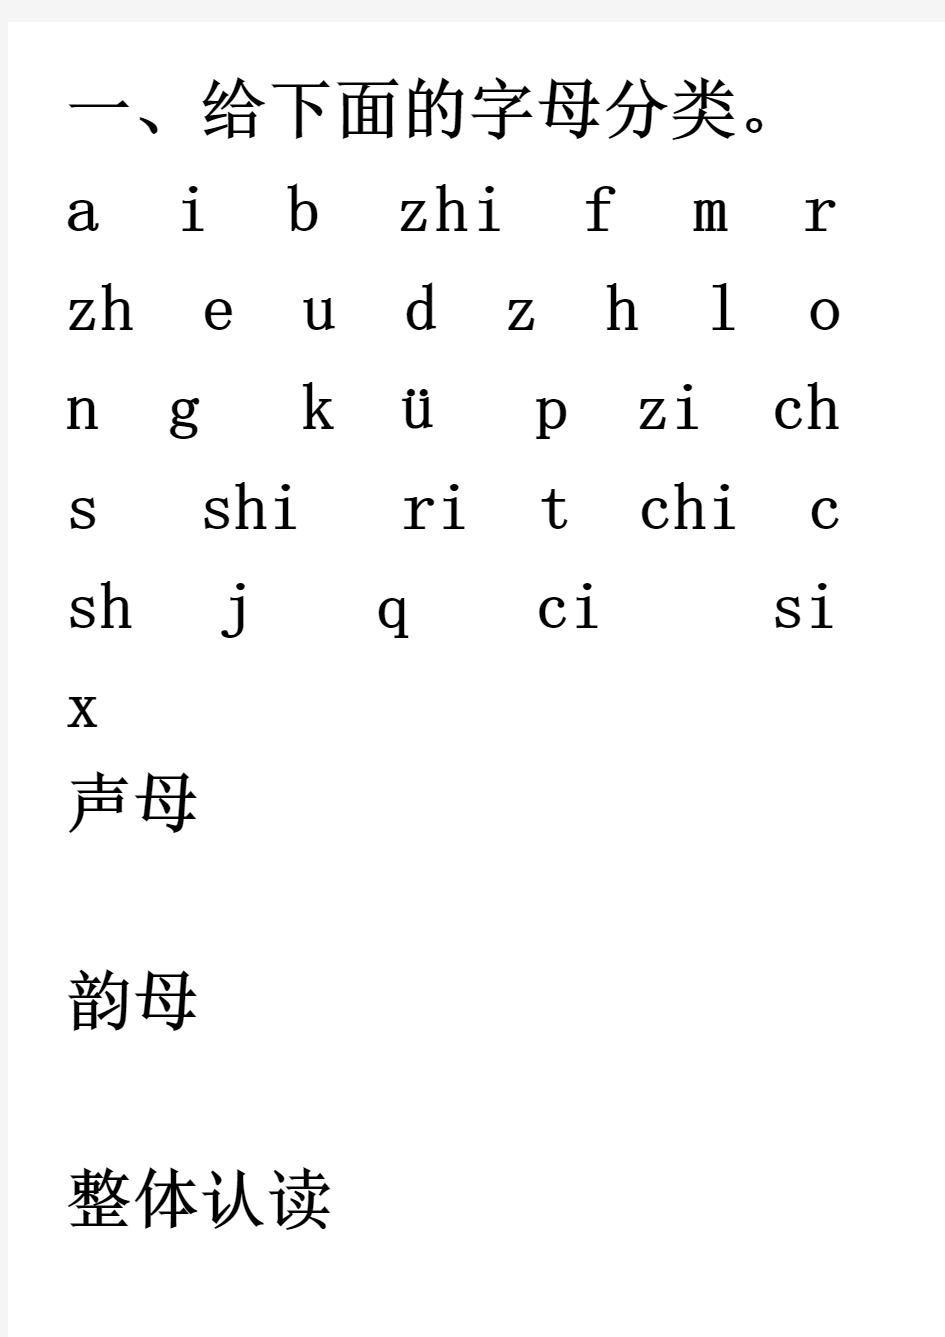 一年级汉语拼音练习题(声母、单韵母)[1][1]